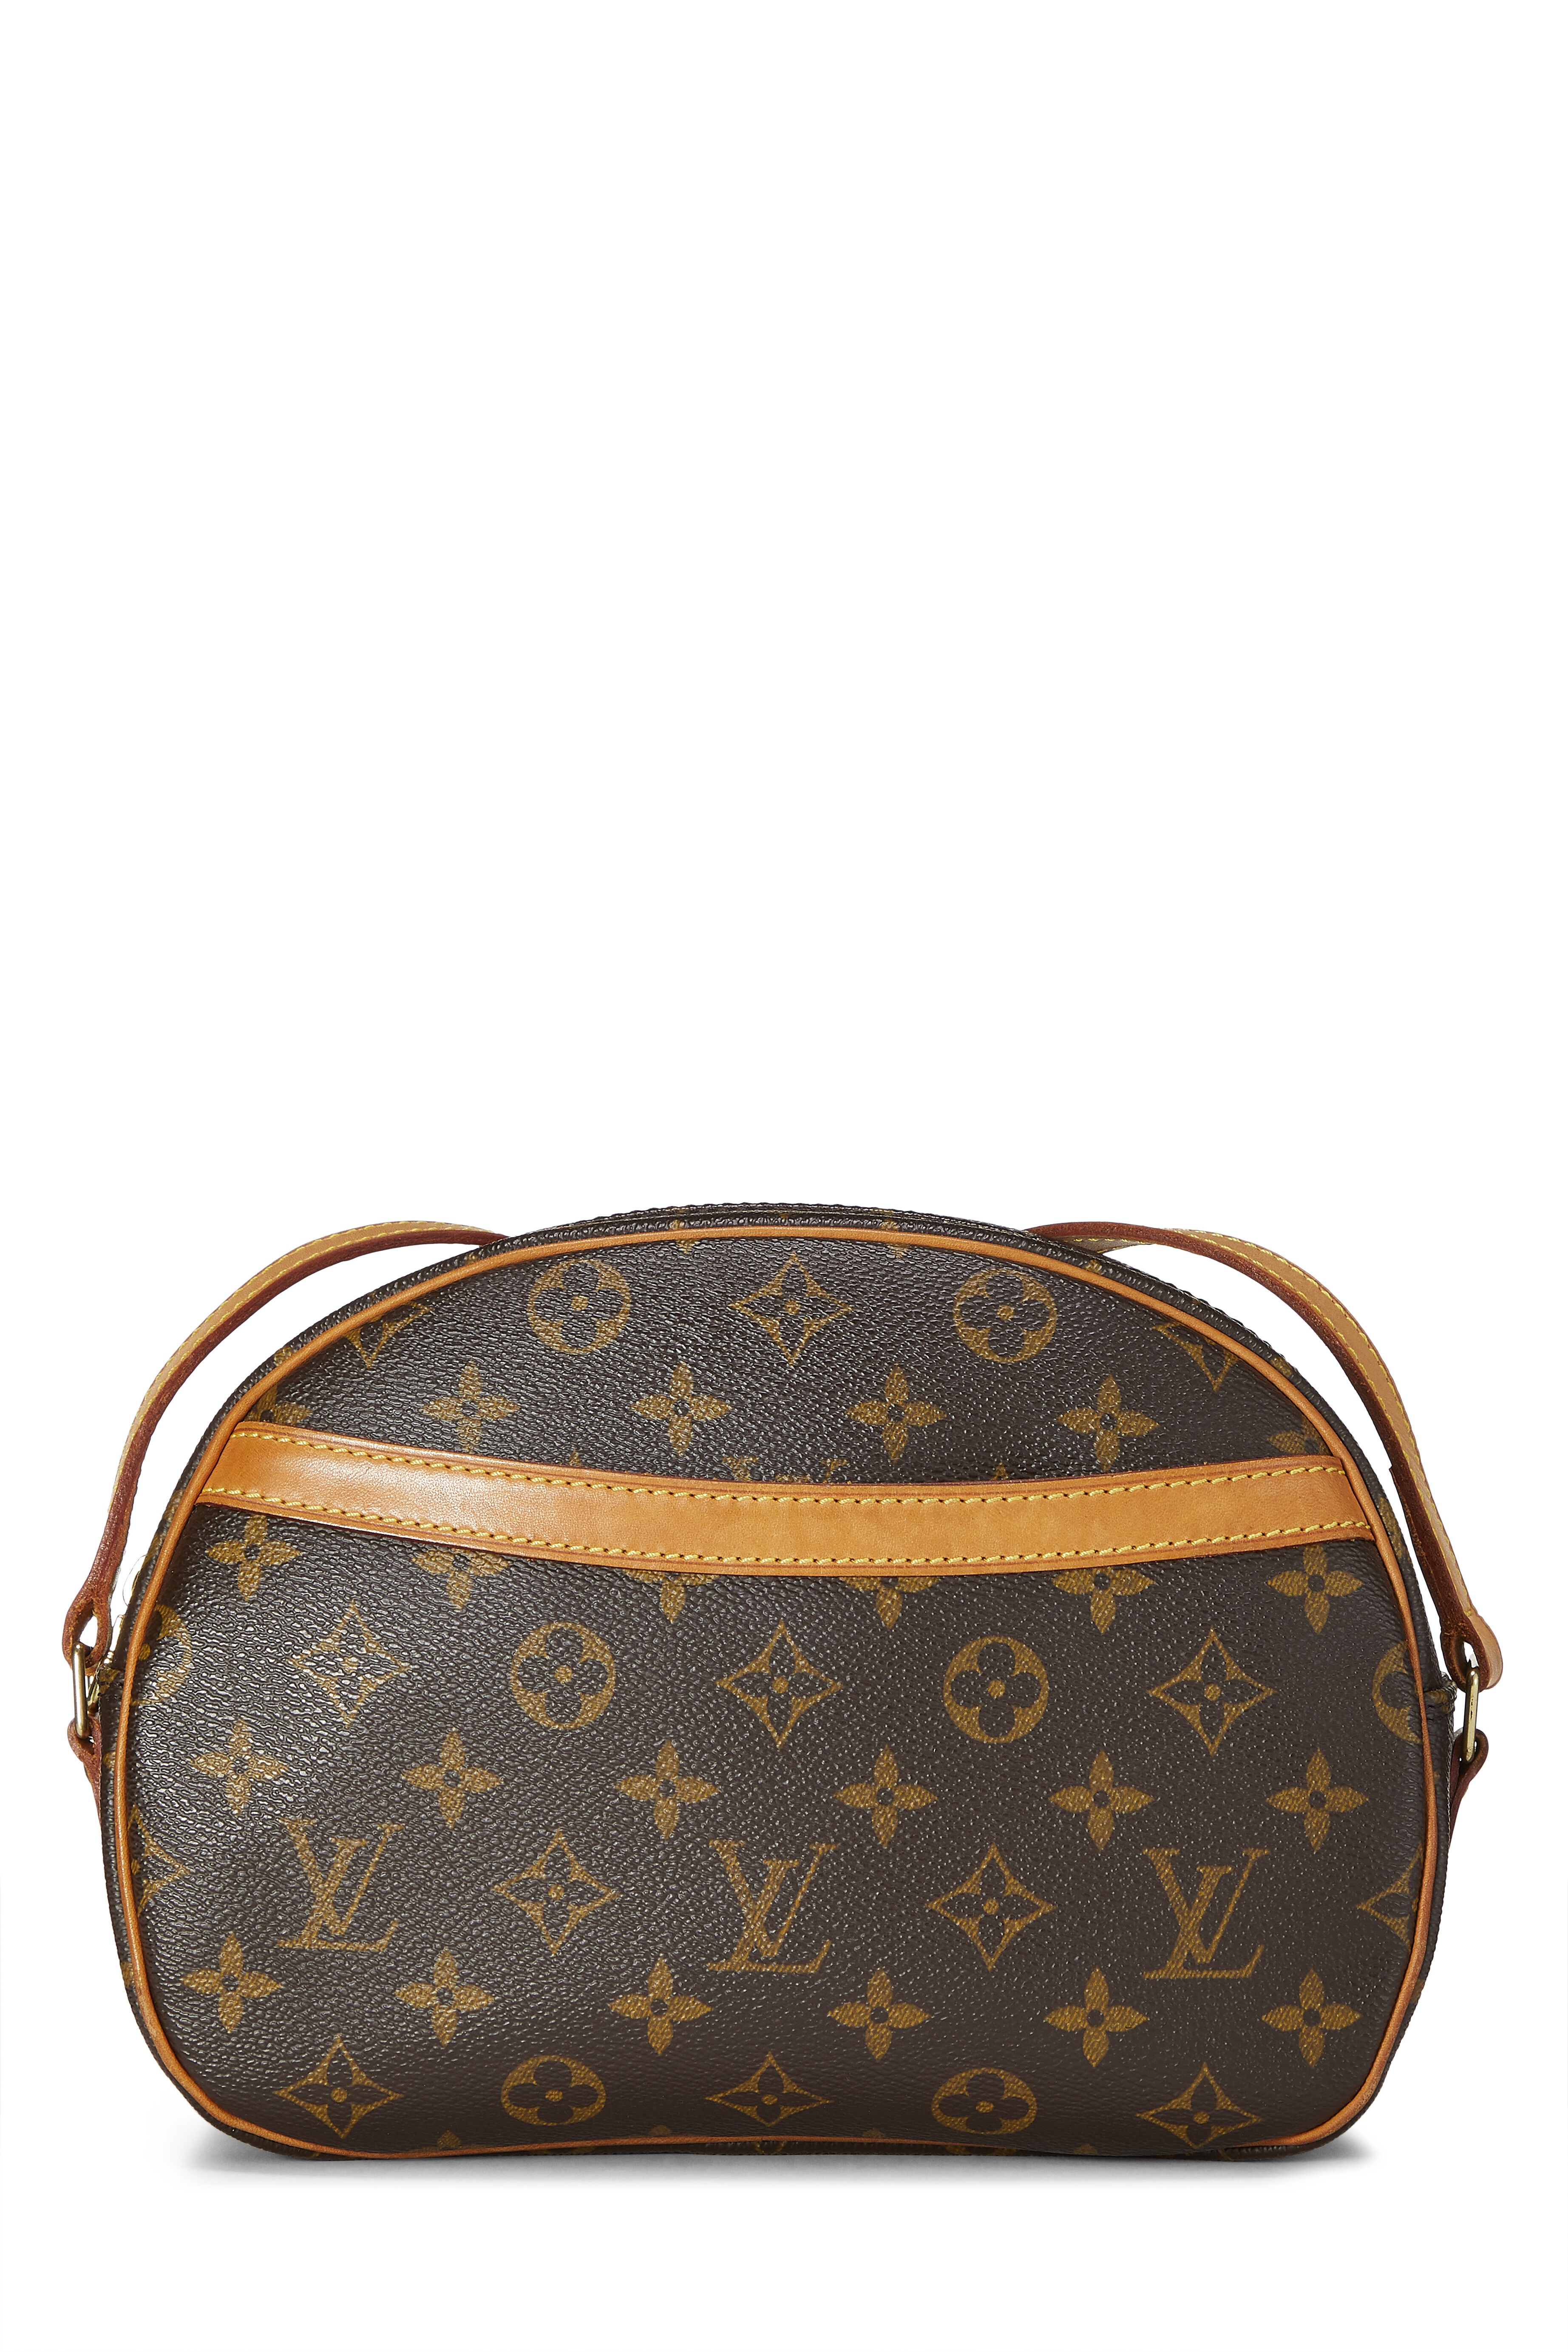 Louis Vuitton Blois Handbag Review 